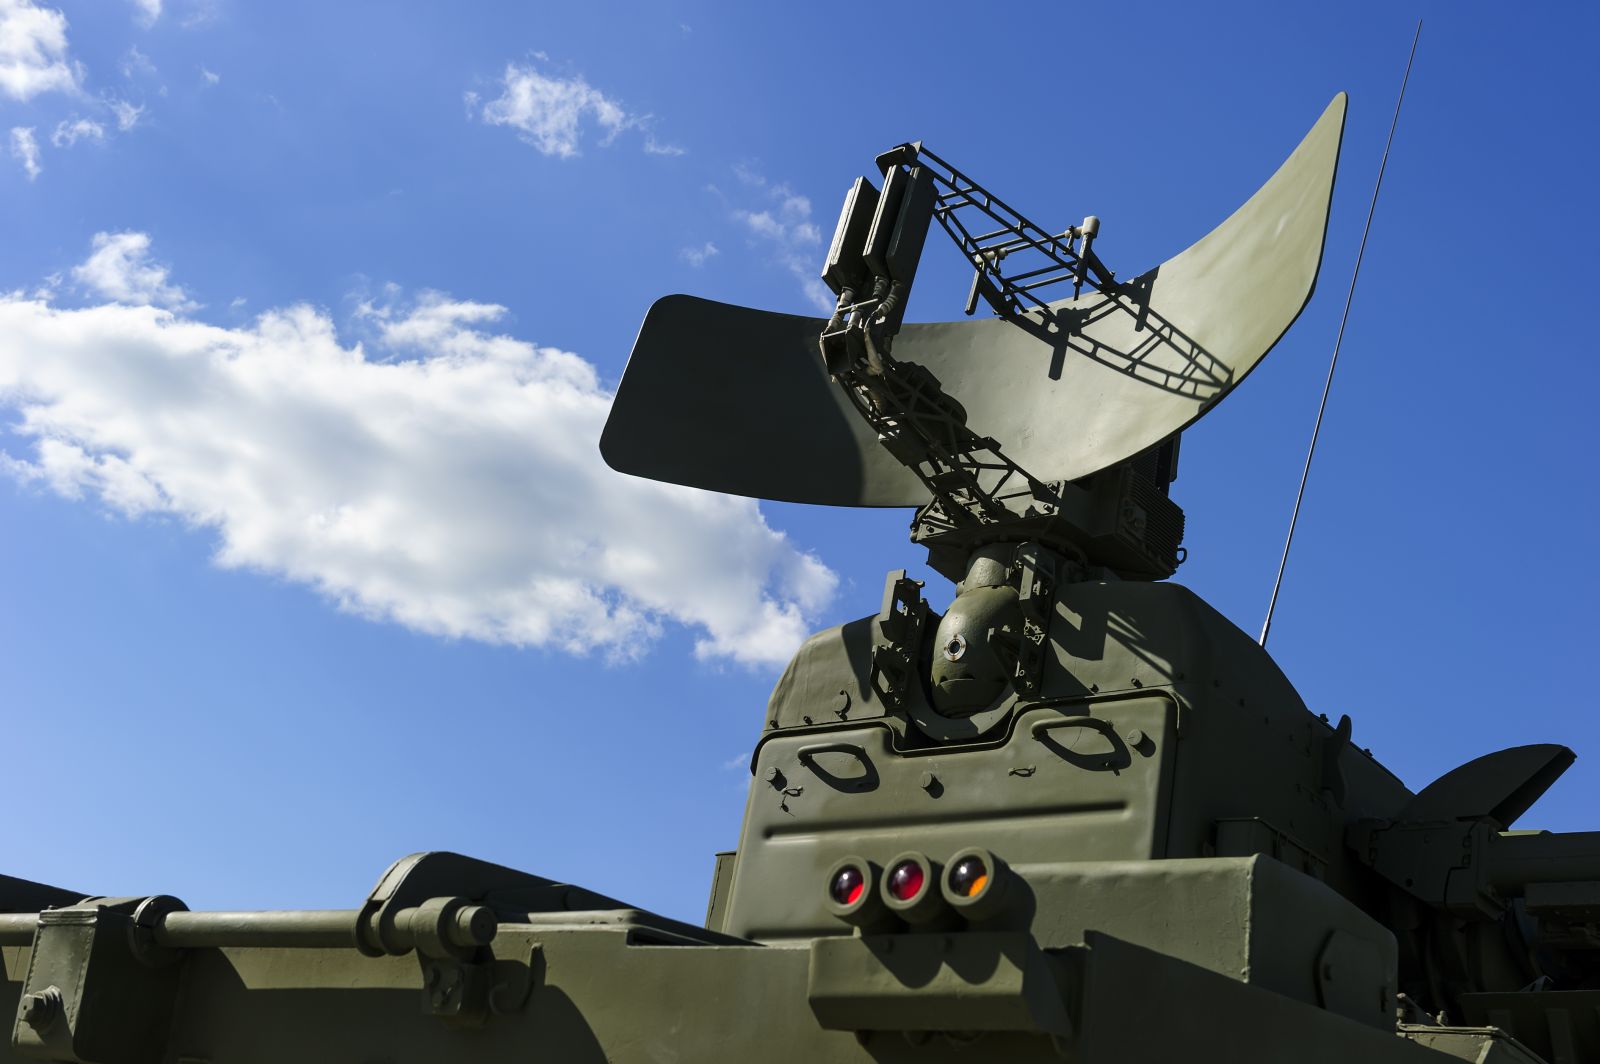 Government - Military radar via Shutterstock